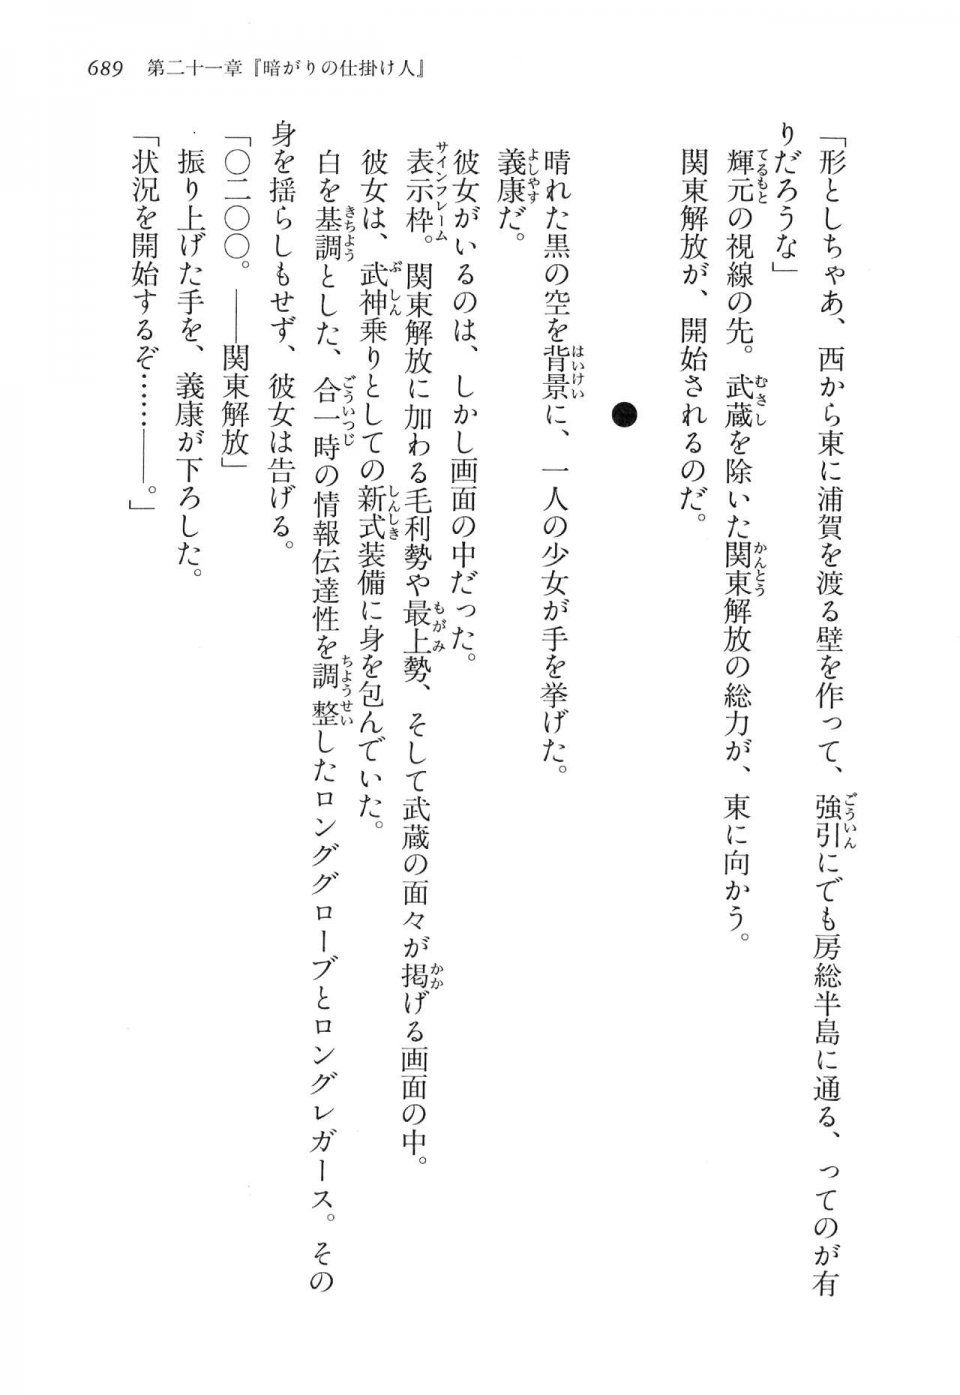 Kyoukai Senjou no Horizon LN Vol 16(7A) - Photo #689